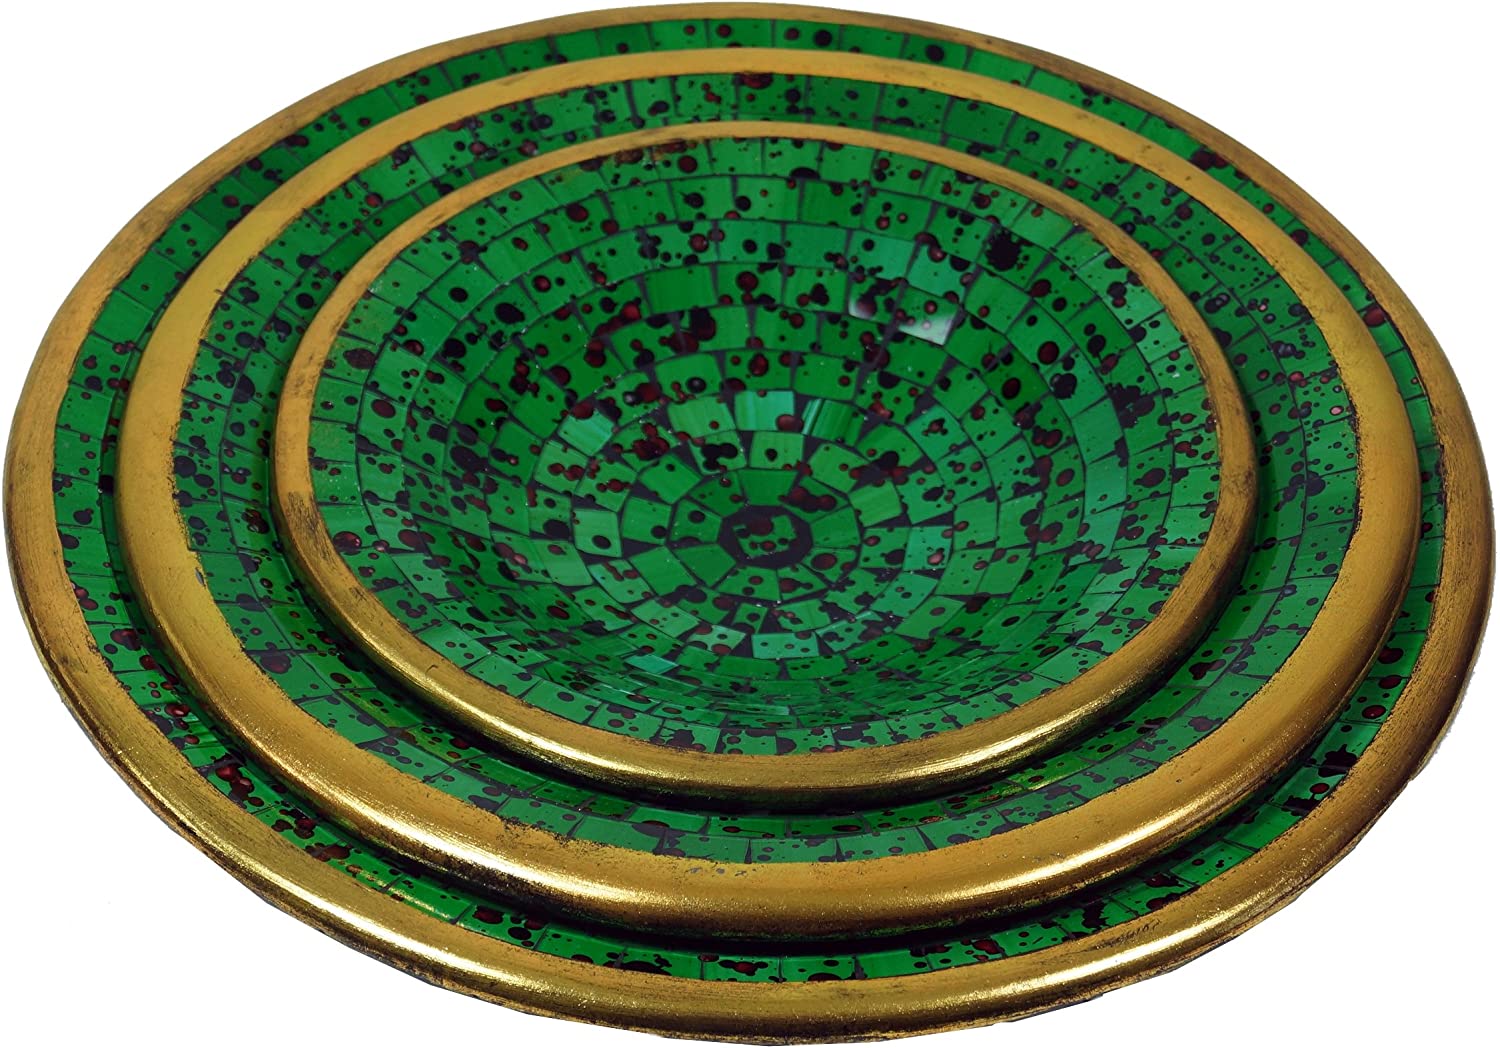 Guru-Shop Round Mosaic Bowl / Coaster - Decorative Bowl - Handmade Ceramic & Glass Fruit Bowls, design 11